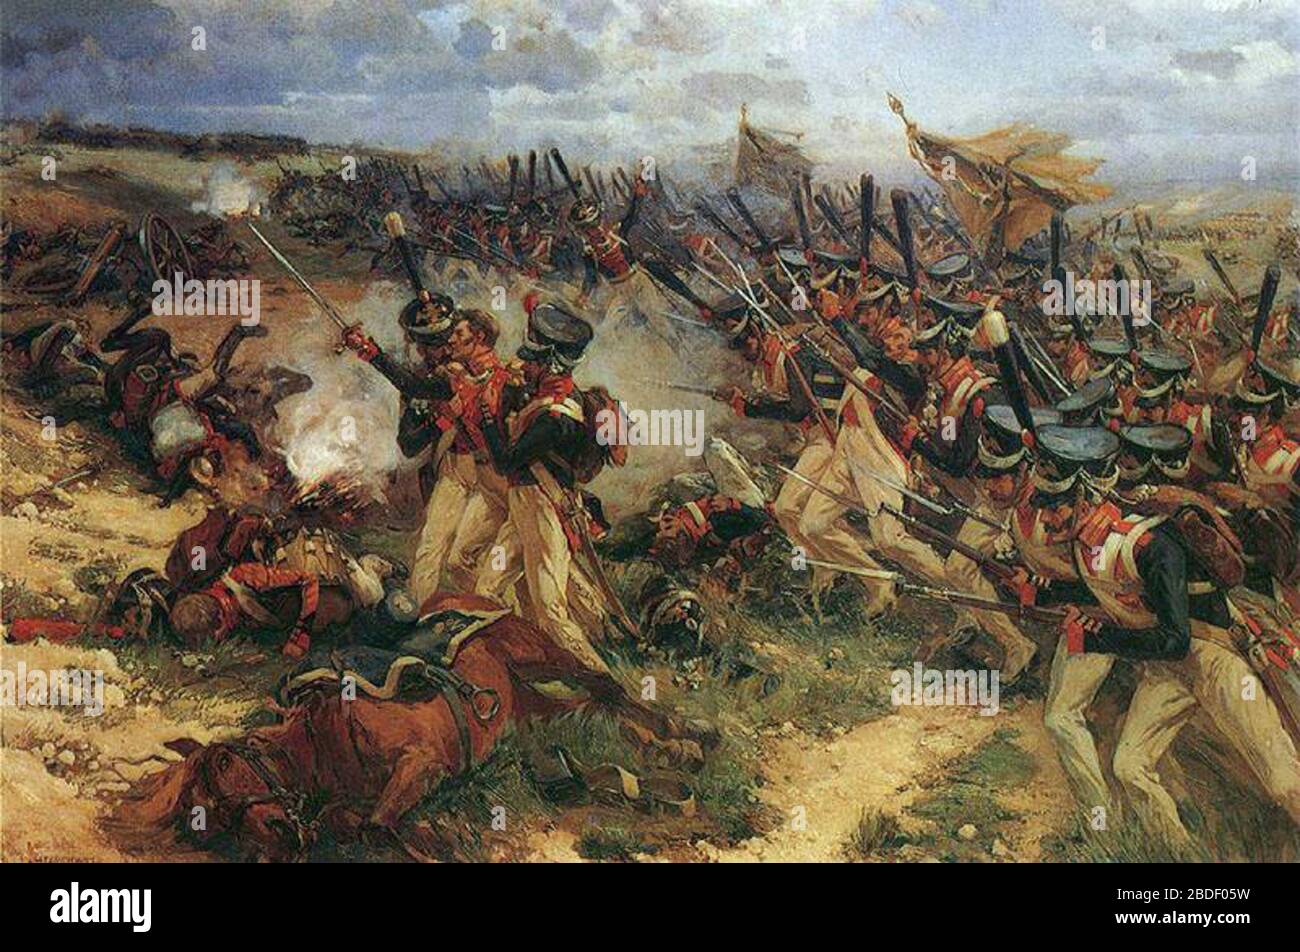 Великие битвы багратион. Бородинское сражение 1812. Багратион битва 1812. Генеральное сражение Отечественной войны 1812.